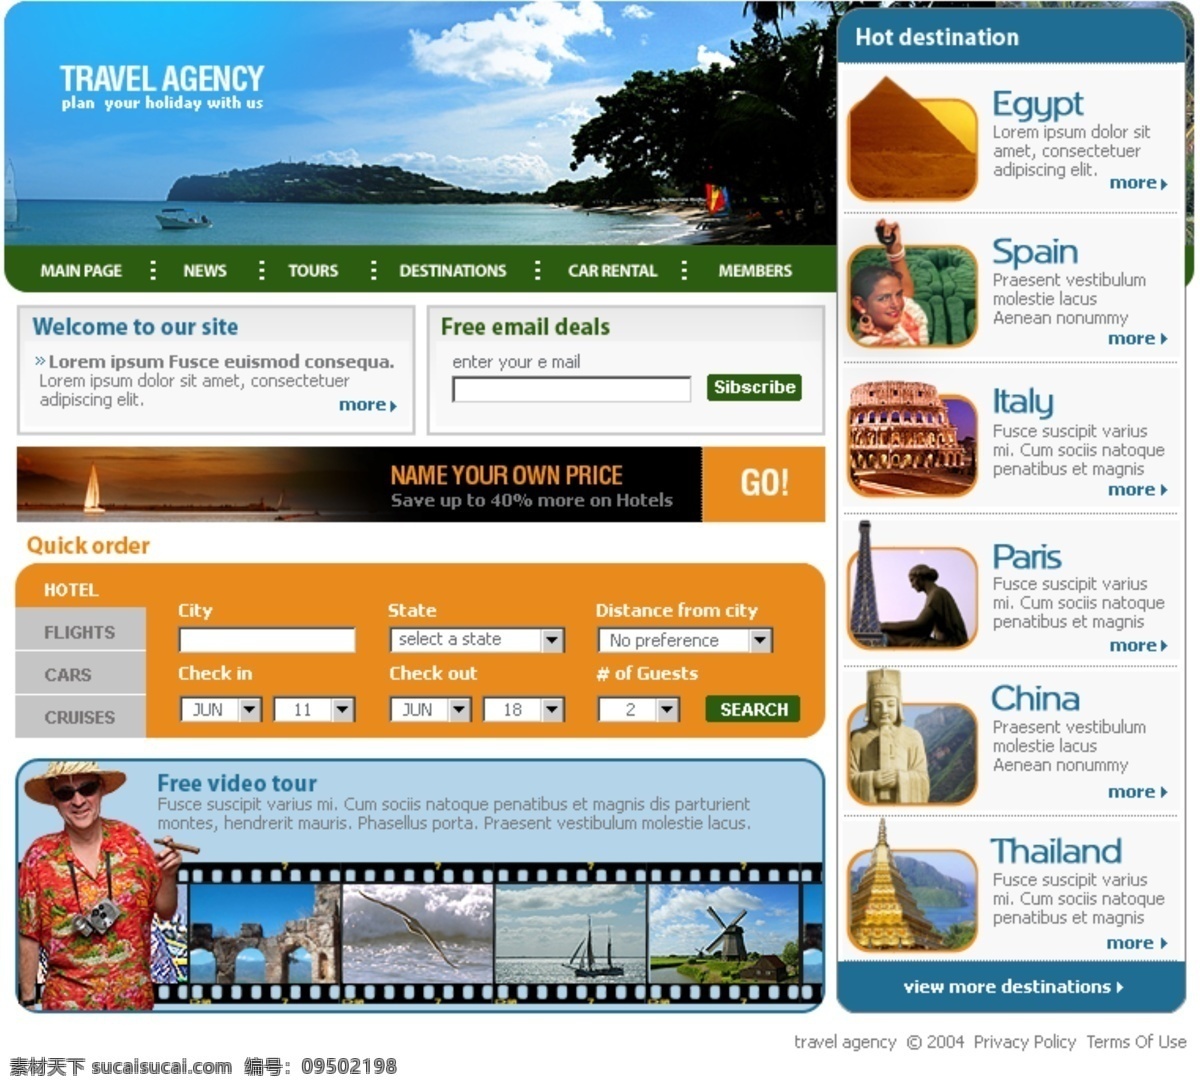 国外网站 旅游模板 设计素材 网页模板 网站 网站模板 英文模板 公司类模板 web 界面设计 网页素材 其他网页素材